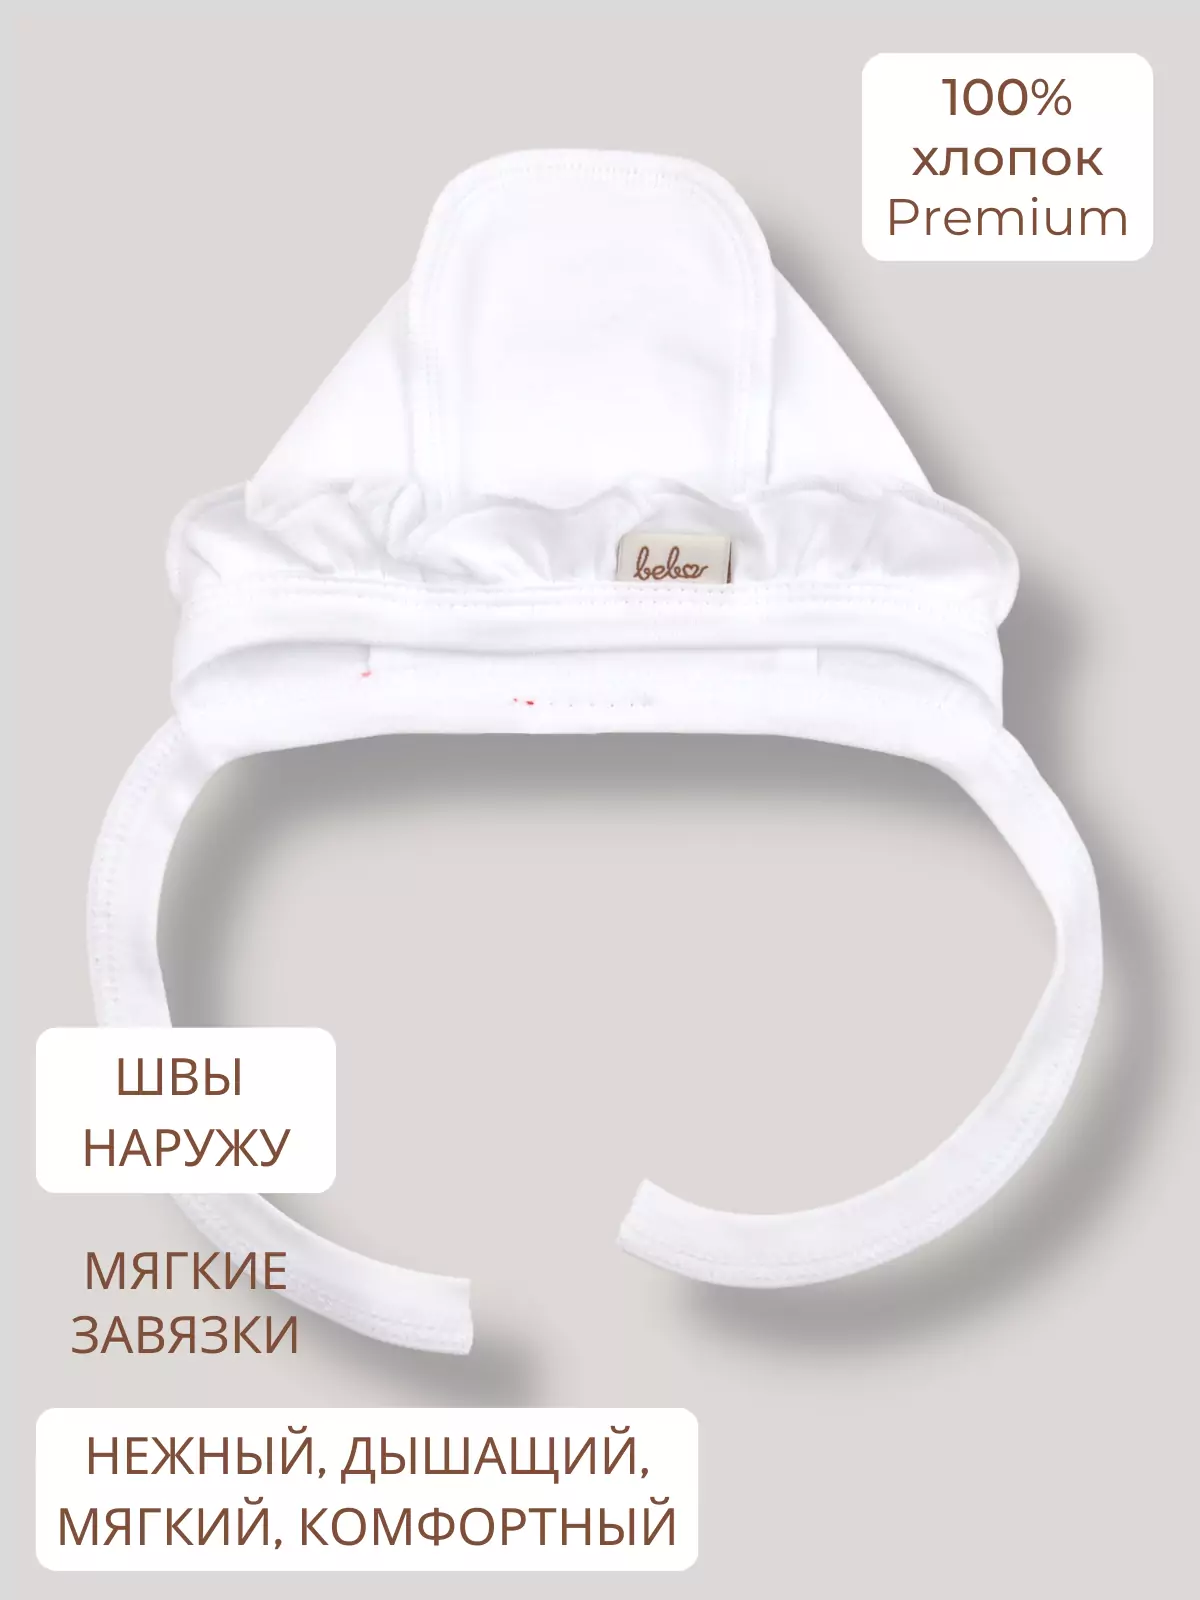 Купить чепчики для новорожденных в интернет-магазине в Москве